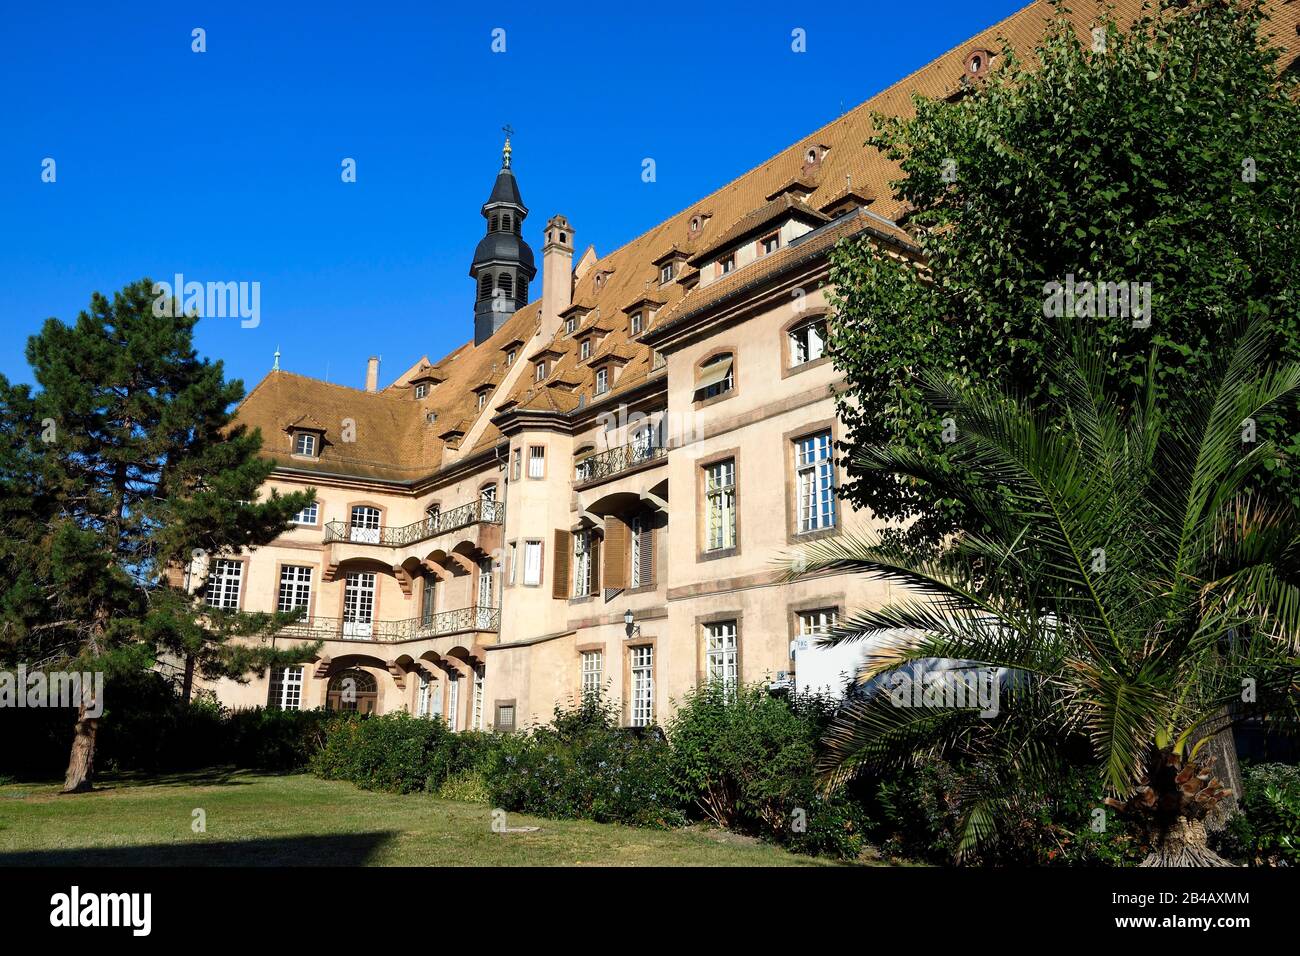 Frankreich, Bas Rhin, Strasbourg, Altstadt, die von der UNESCO zum Weltkulturerbe erklärt wurde, das zivile Krankenhaus, historische Stätte der Straßburger Universitätskliniken, das historische Hauptgebäude, das im 18. Jahrhundert umgebaut wurde Stockfoto